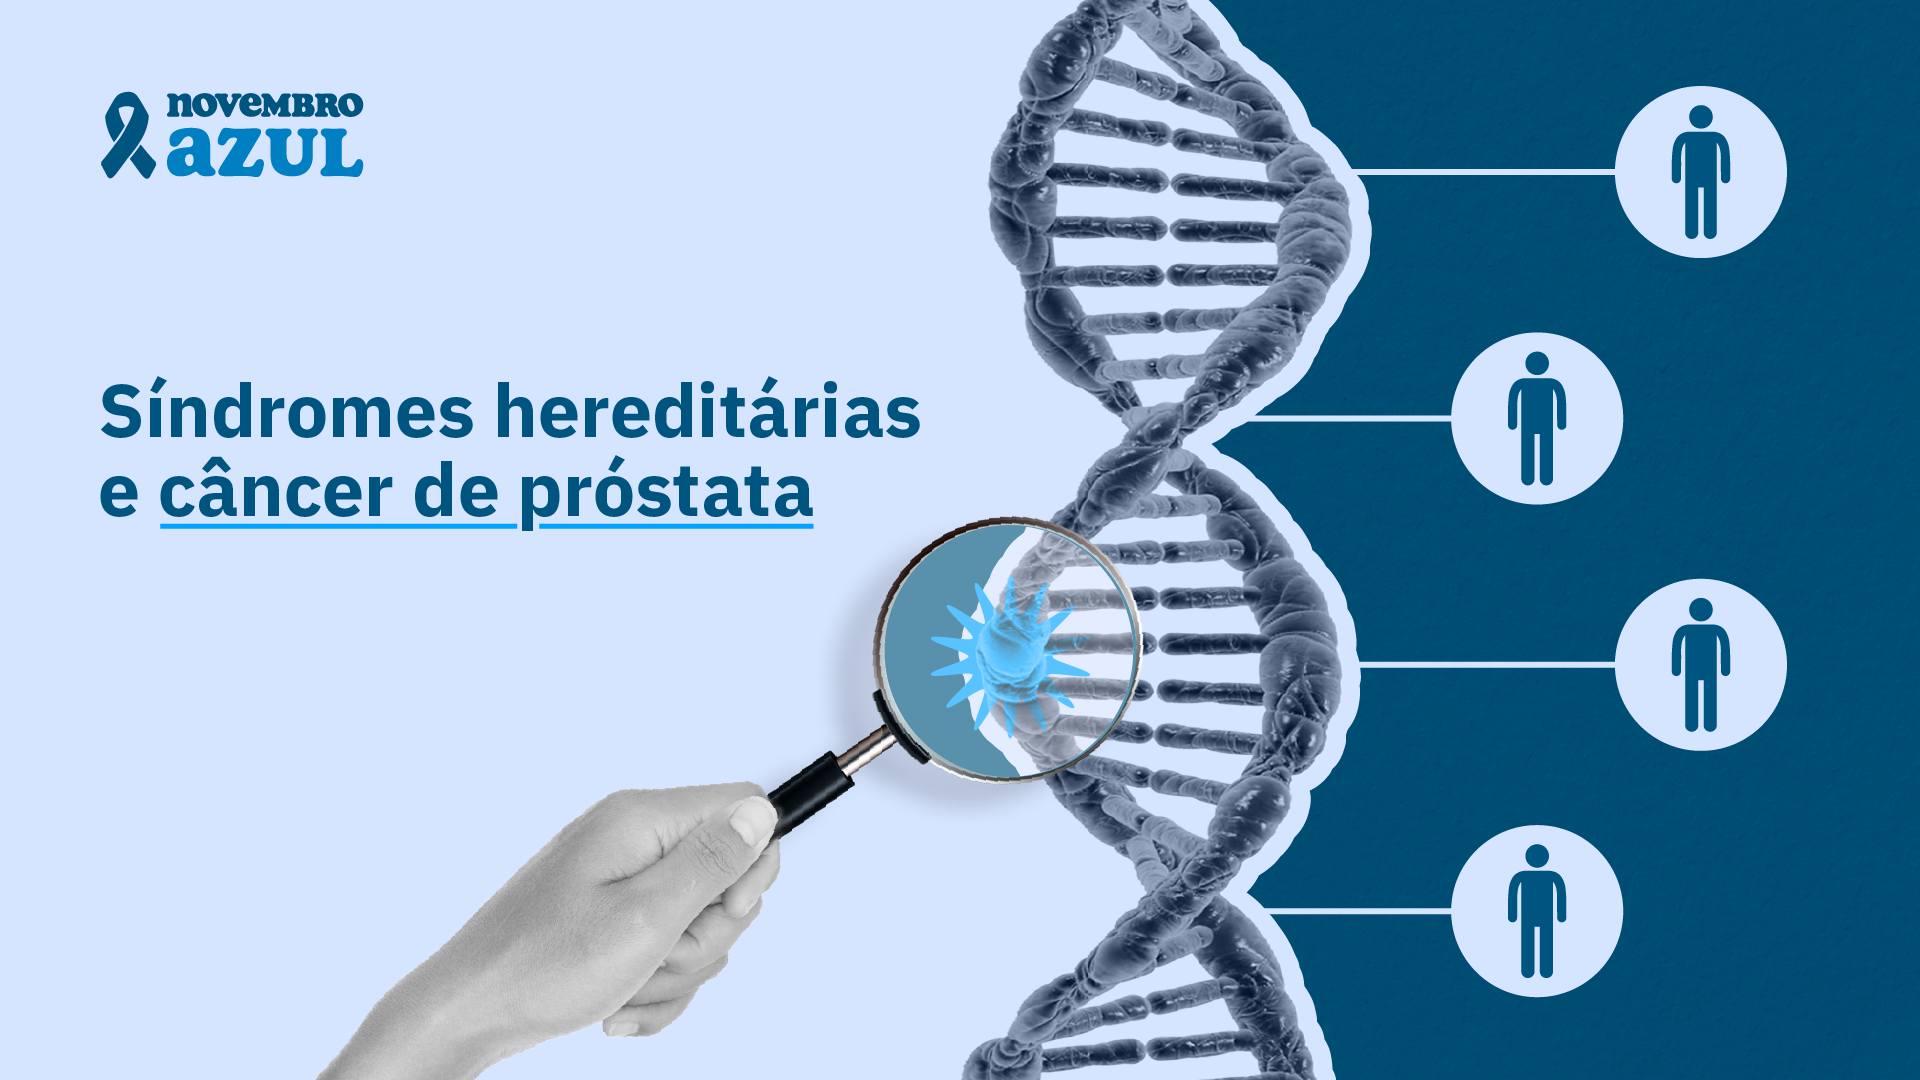 Síndromes hereditárias e câncer de próstata